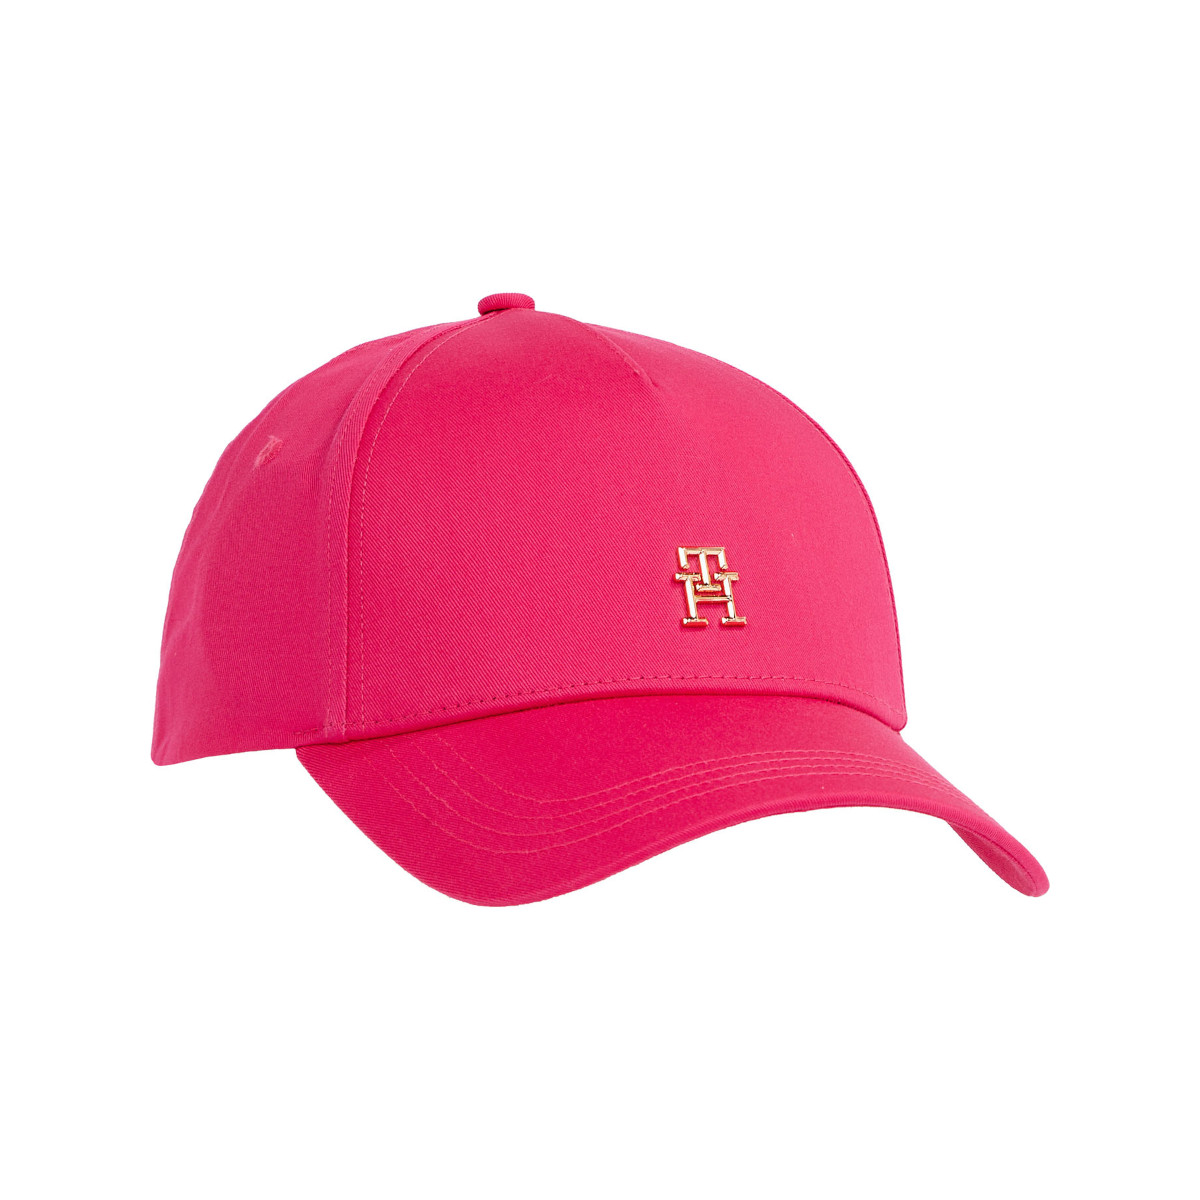 M05-WOMEN-HATS